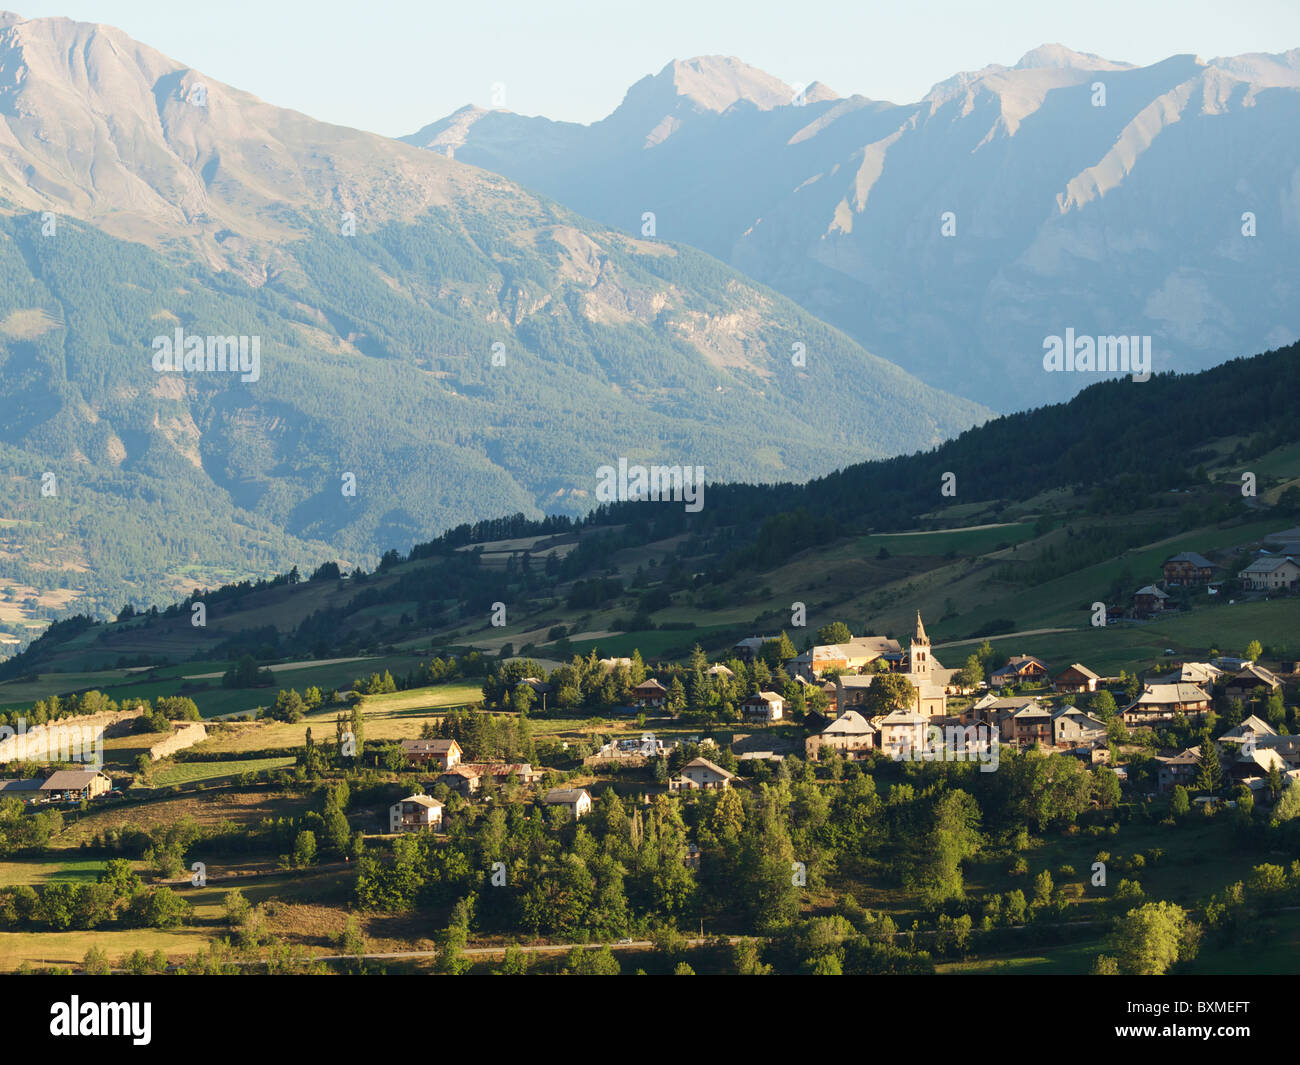 Les Orres, Hautes Alpes, France a picturesque village at 1600m altitude Stock Photo